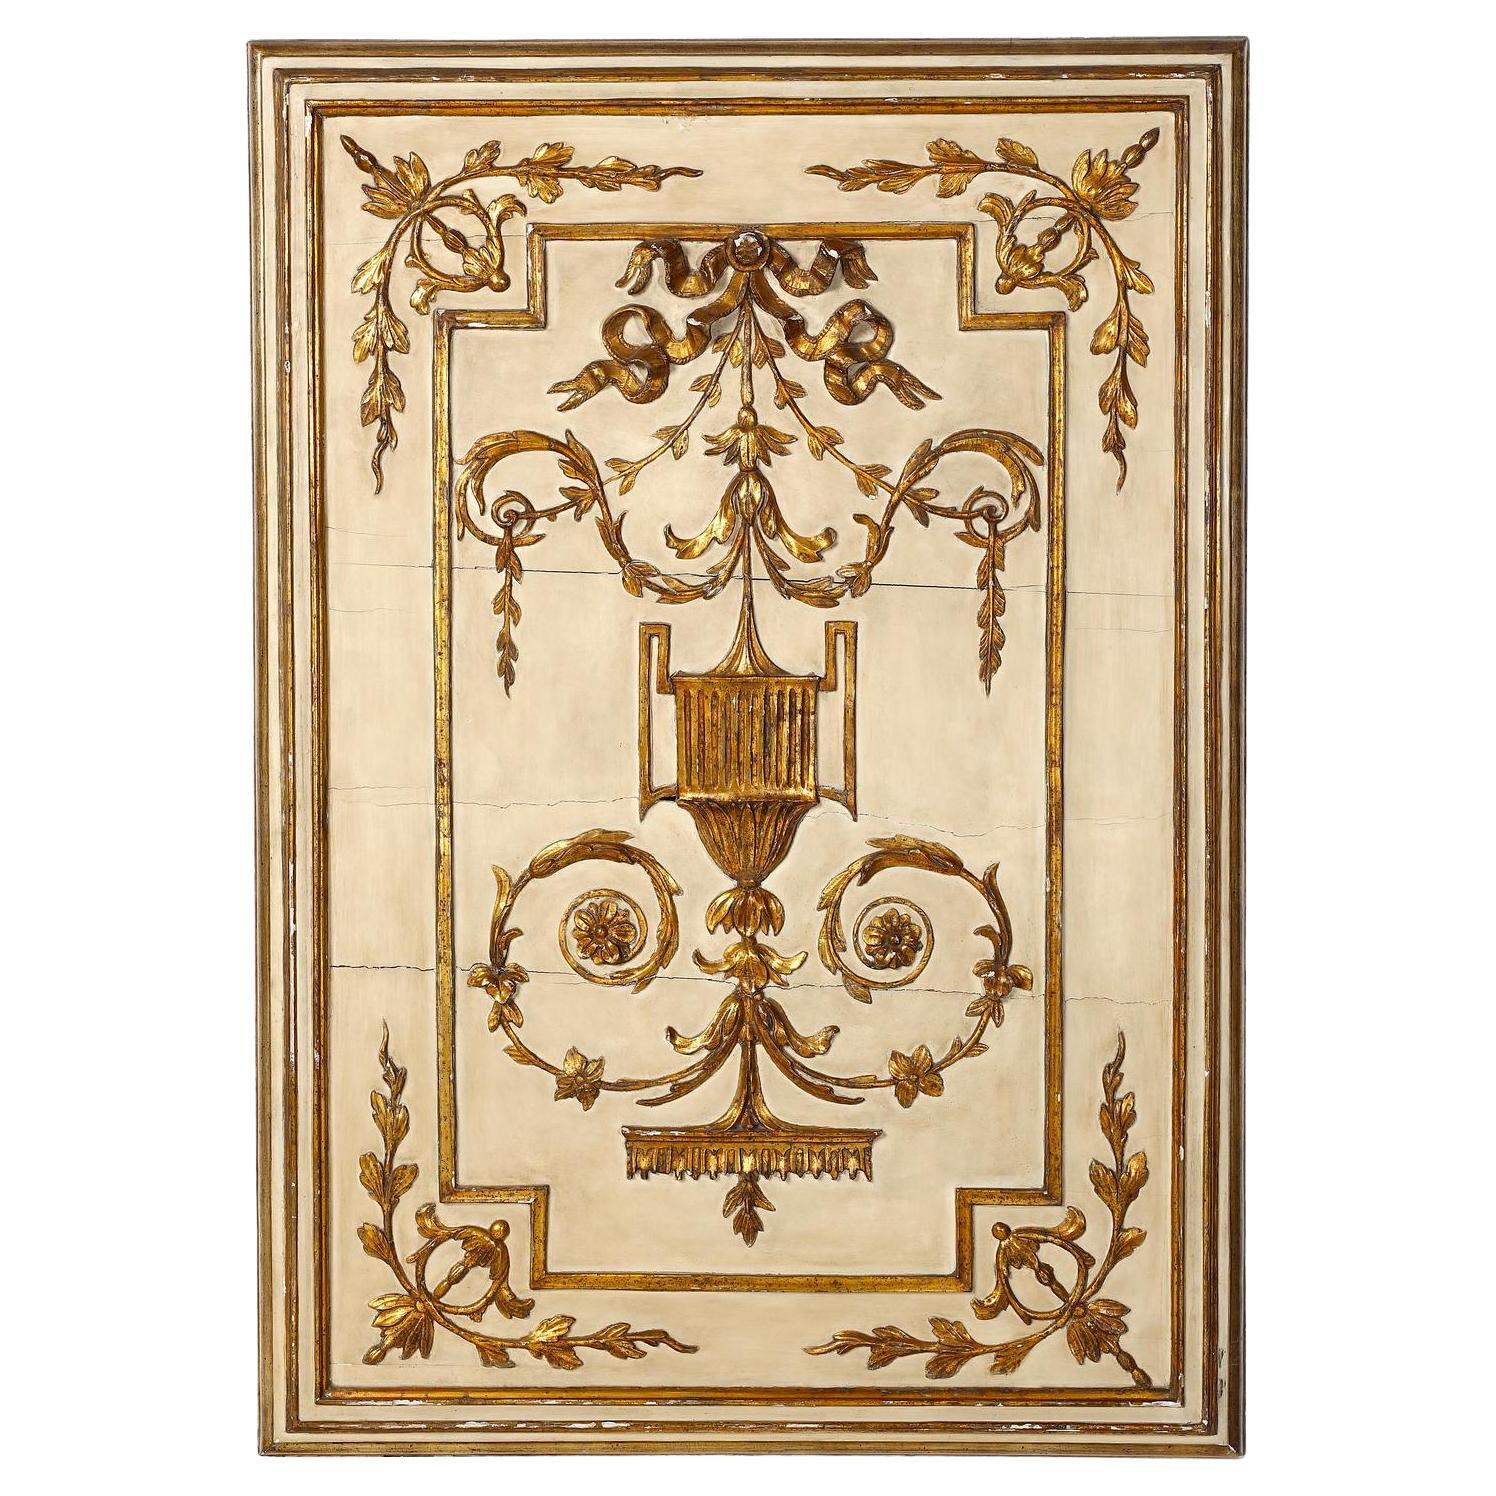 Neoklassizistische italienische geschnitzte, bemalte und vergoldete Wandtafel aus dem 18. Jahrhundert